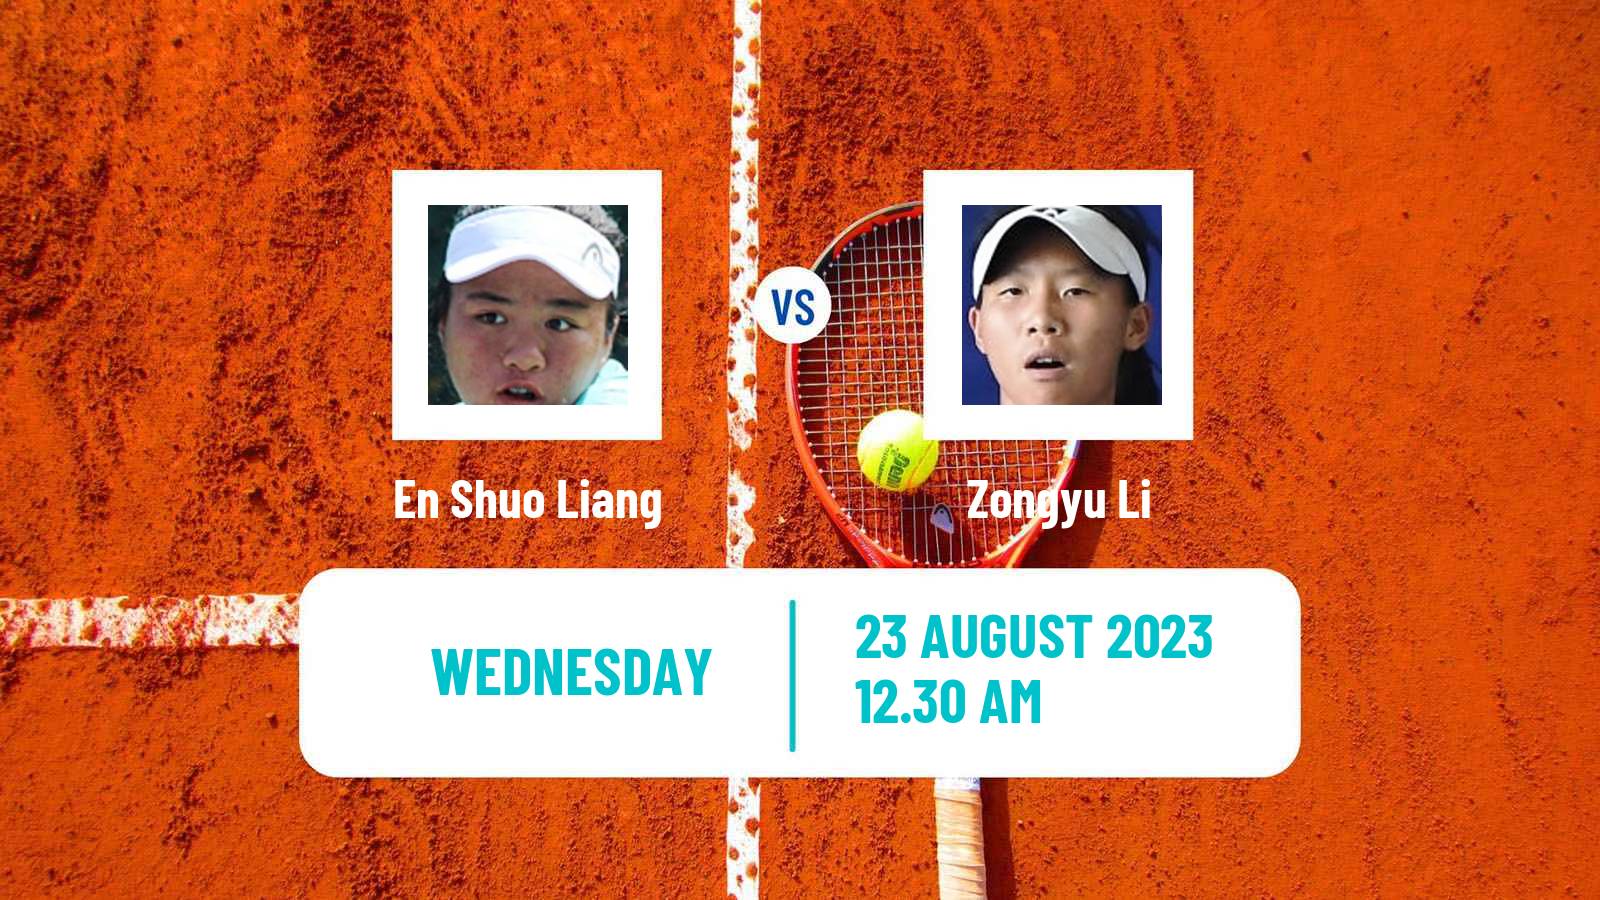 Tennis ITF W40 Hong Kong 2 Women En Shuo Liang - Zongyu Li